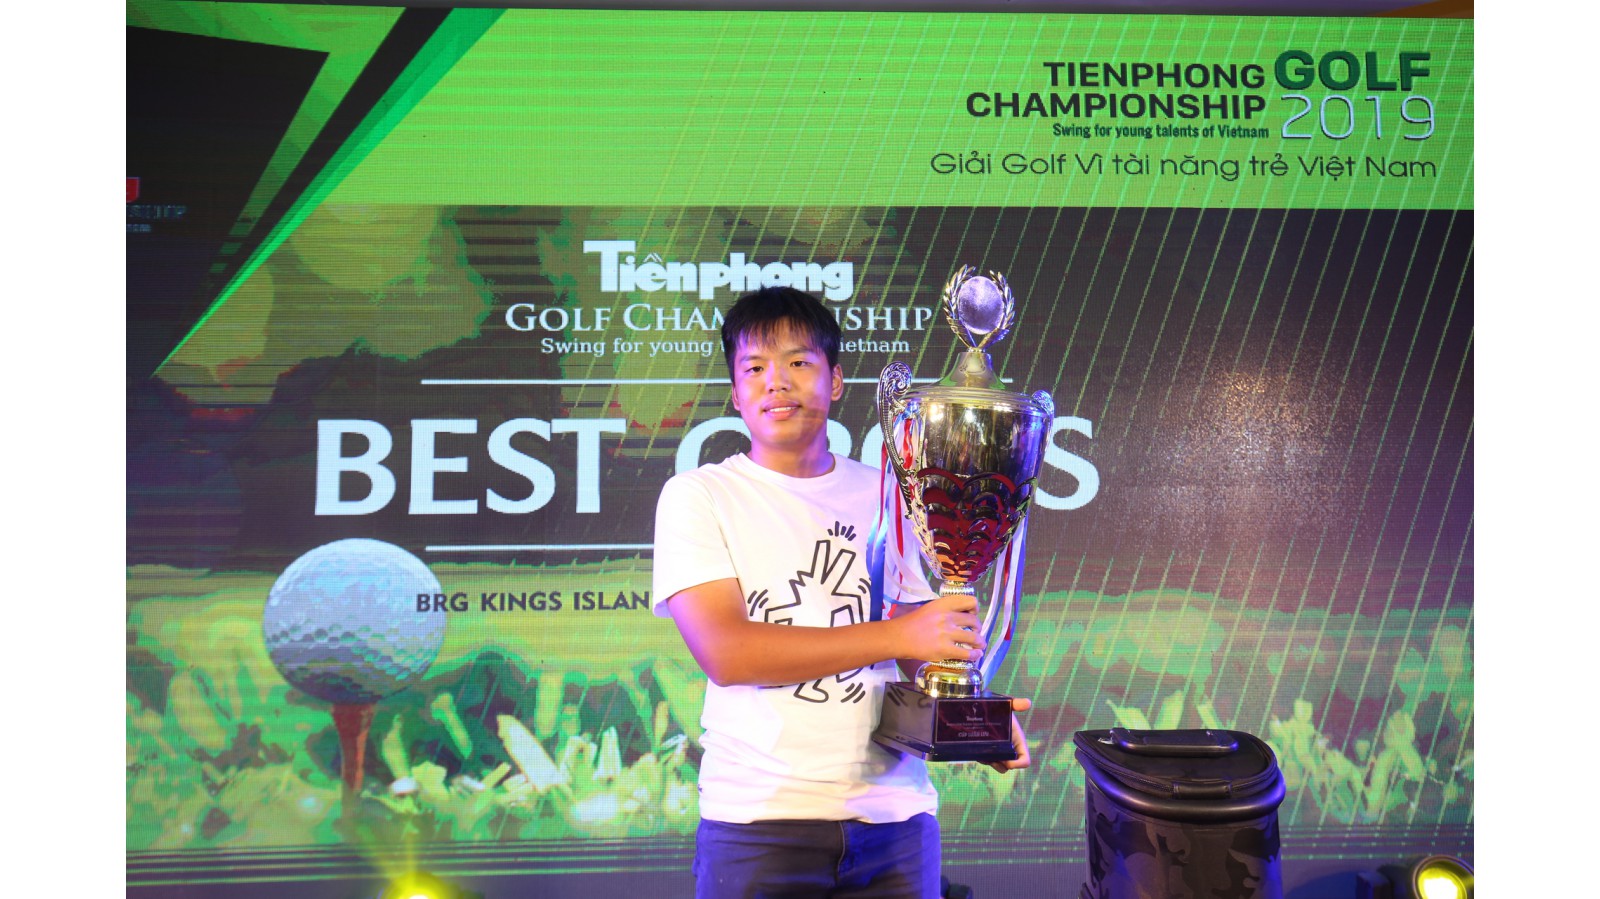 Tiền Phong Golf Championship khép lại thành công rực rỡ với chức vô địch thuộc về golfer Nguyễn Vũ Quốc Anh. Golfer 16 tuổi trở thành golfer thứ 3 có vinh dự được ghi danh trên chiếc Cup luân lưu truyền thống của giải